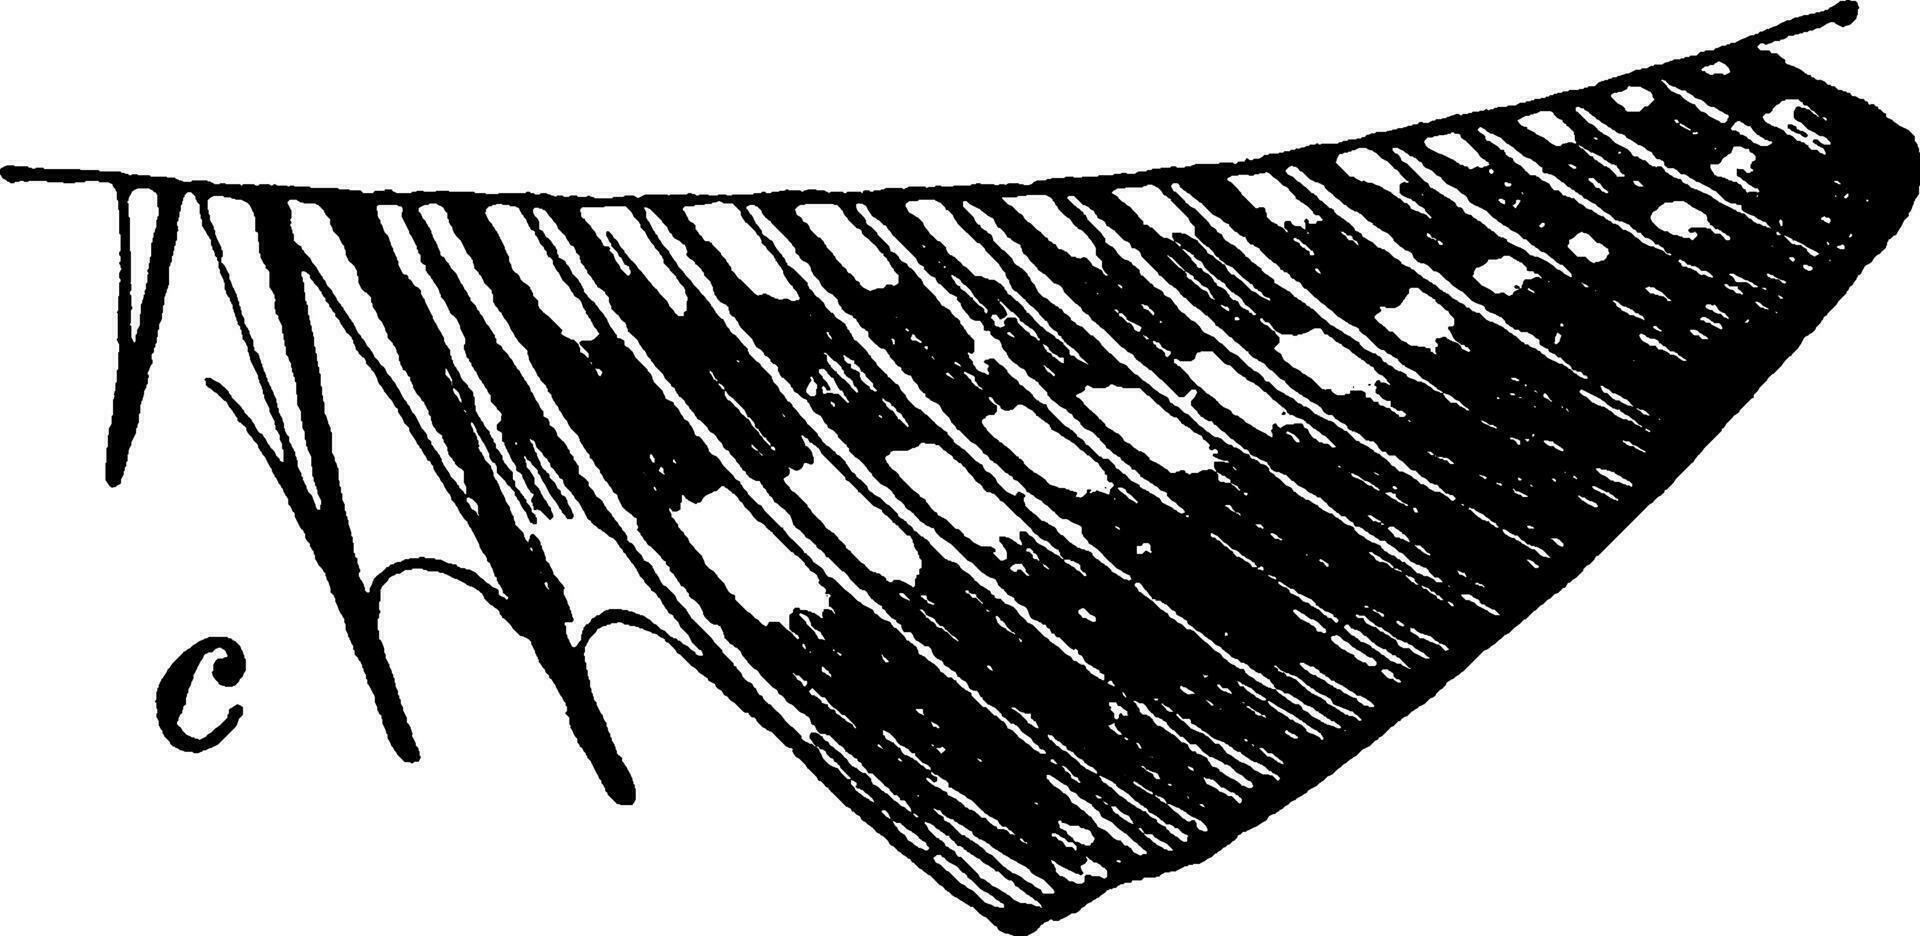 Trois épines sur le anal ailette de une osseux poisson, ancien illustration. vecteur